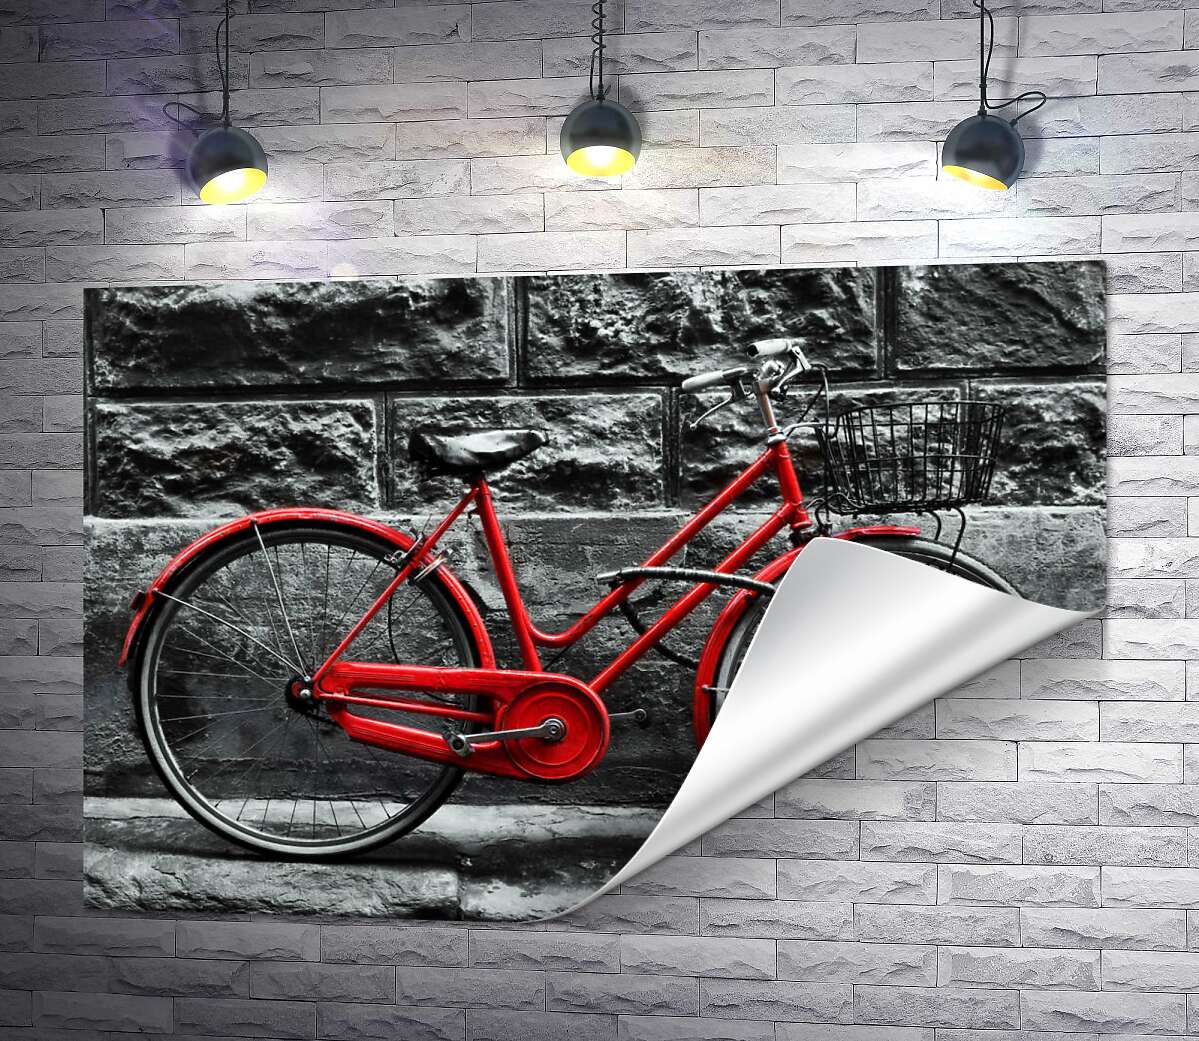 друк Червоний велосипед чекає на власника біля стіни будинку